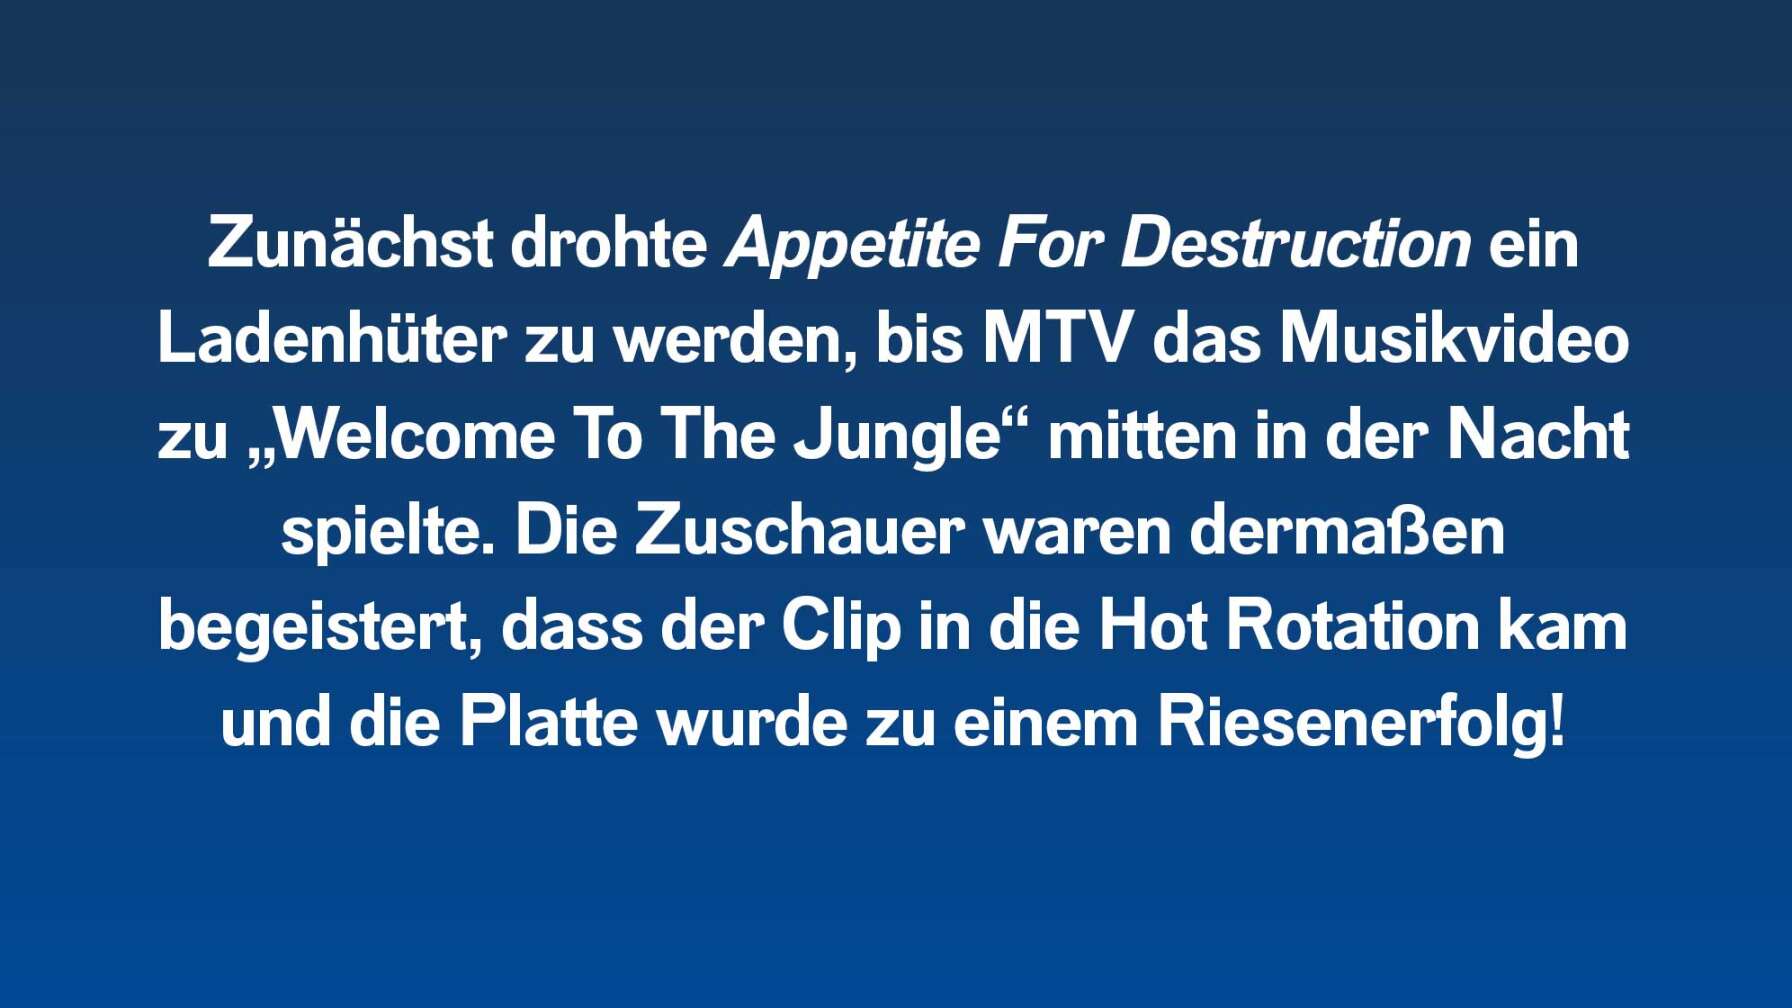 Zunächst drohte Appetite For Destruction ein Ladenhüter zu werden, bis MTV das Musikvideo zu „Welcome To The Jungle“ mitten in der Nacht spielte. Die Zuschauer waren dermaßen begeistert, dass der Clip in die Hot Rotation kam und die Platte wurde zu einem Riesenerfolg!